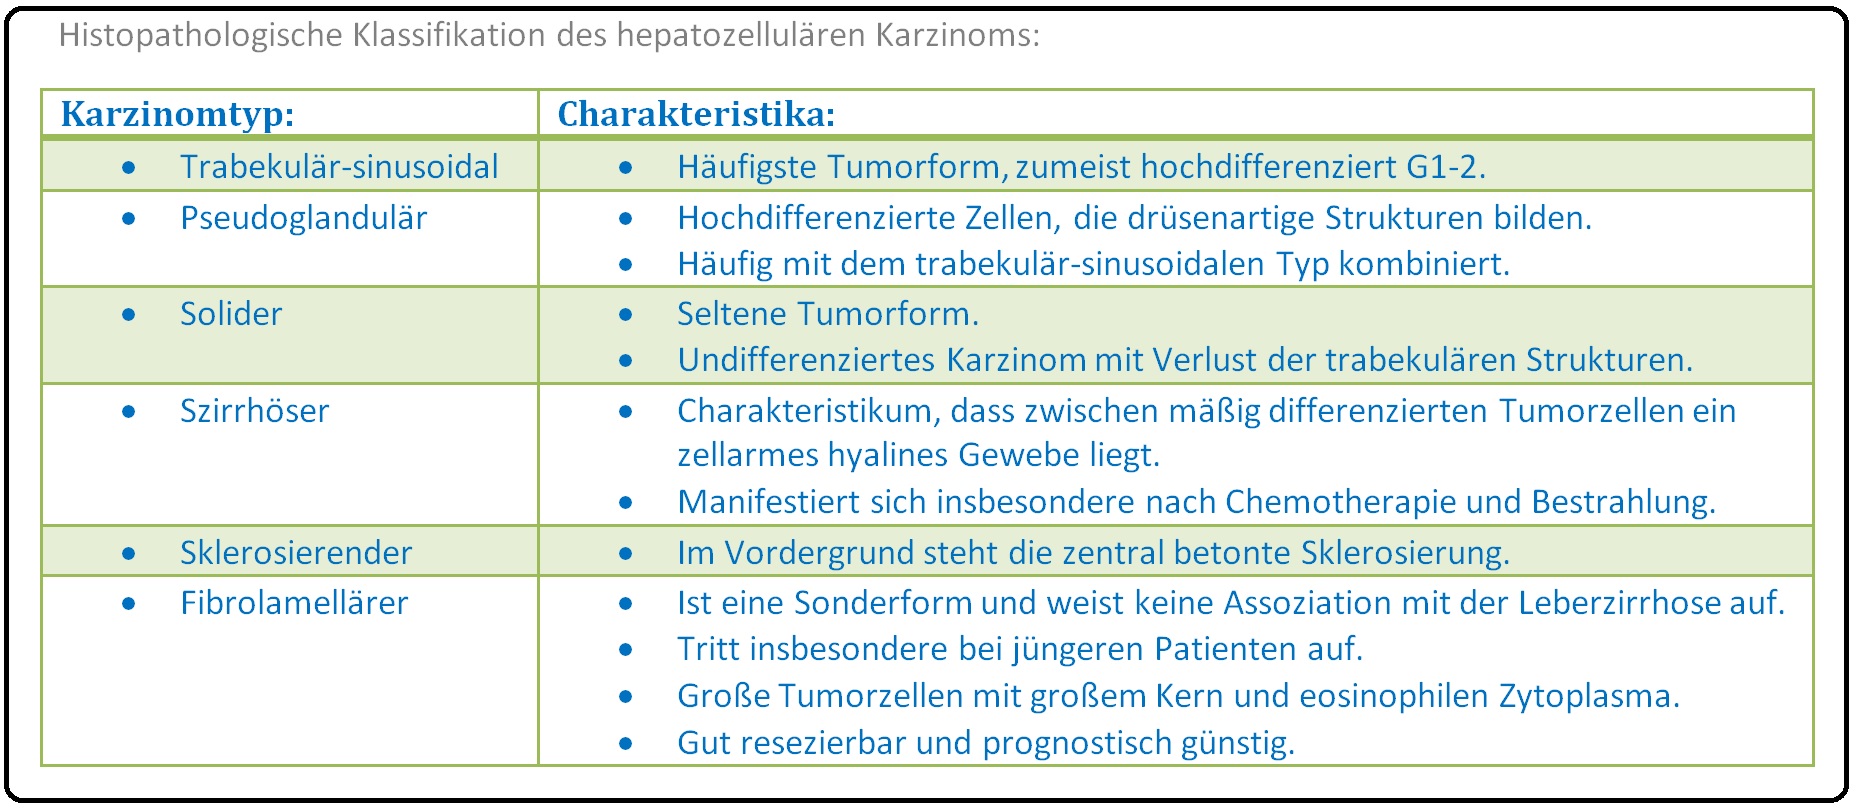 469 Histopathologische Klassifikation des hepatozellulären Karzinoms